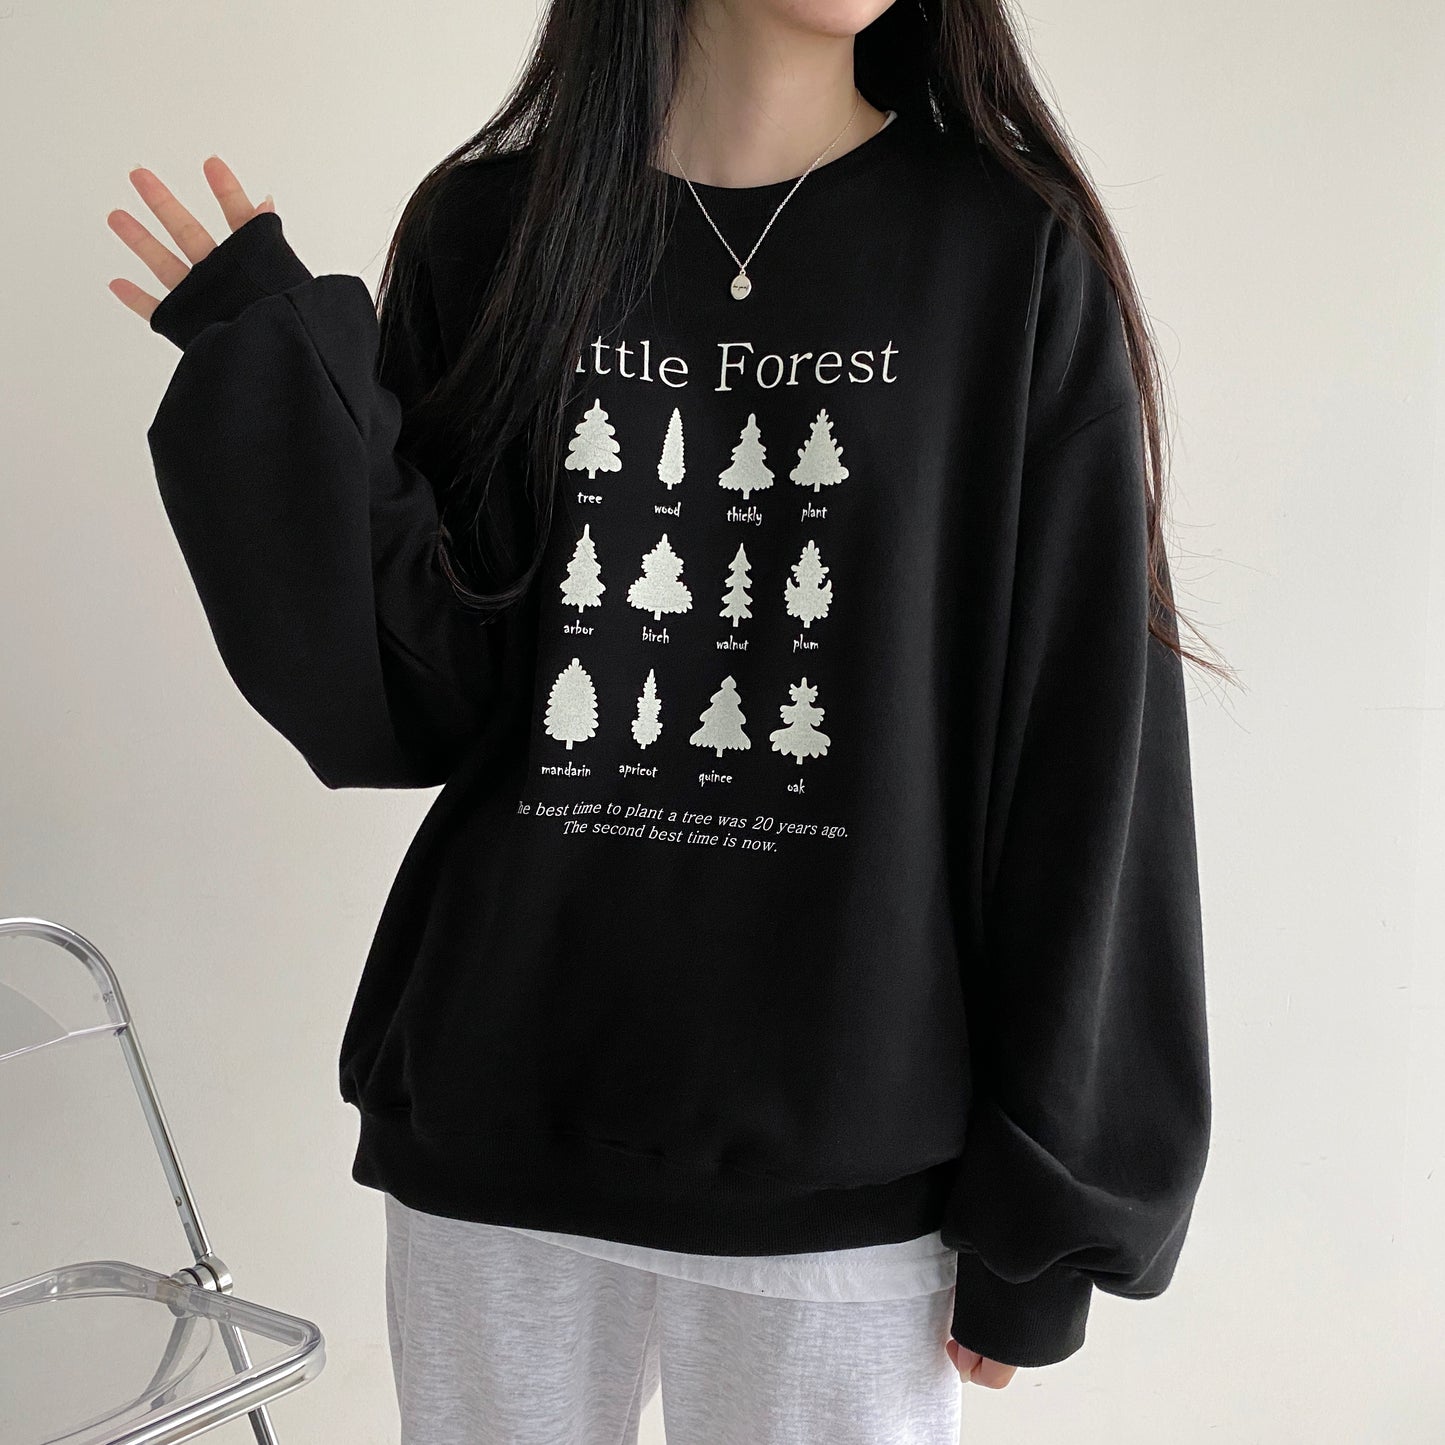 🌲韓製Little Forest衛衣